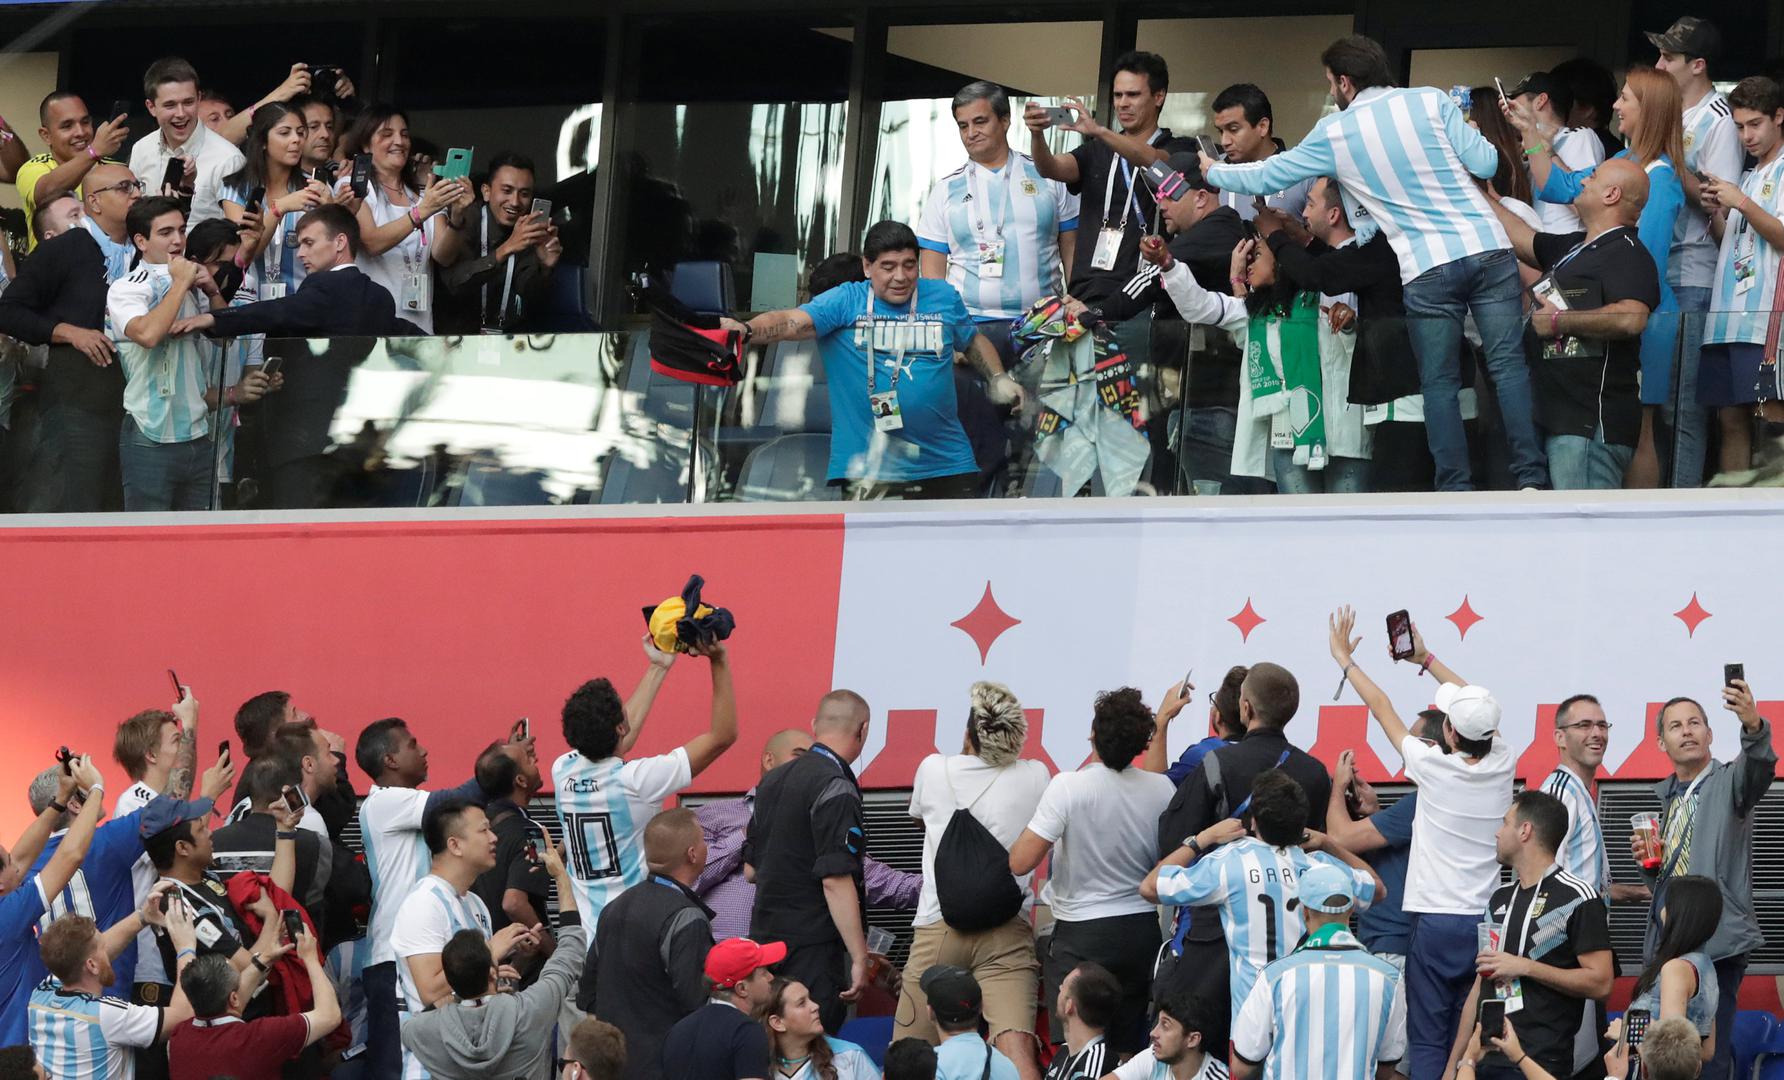 Tijekom utakmice Maradona je privlačio pozornost svojim ponašanjem na tribinama - kontaktirajući s navijačima, spavanjem u jednom trenutku...